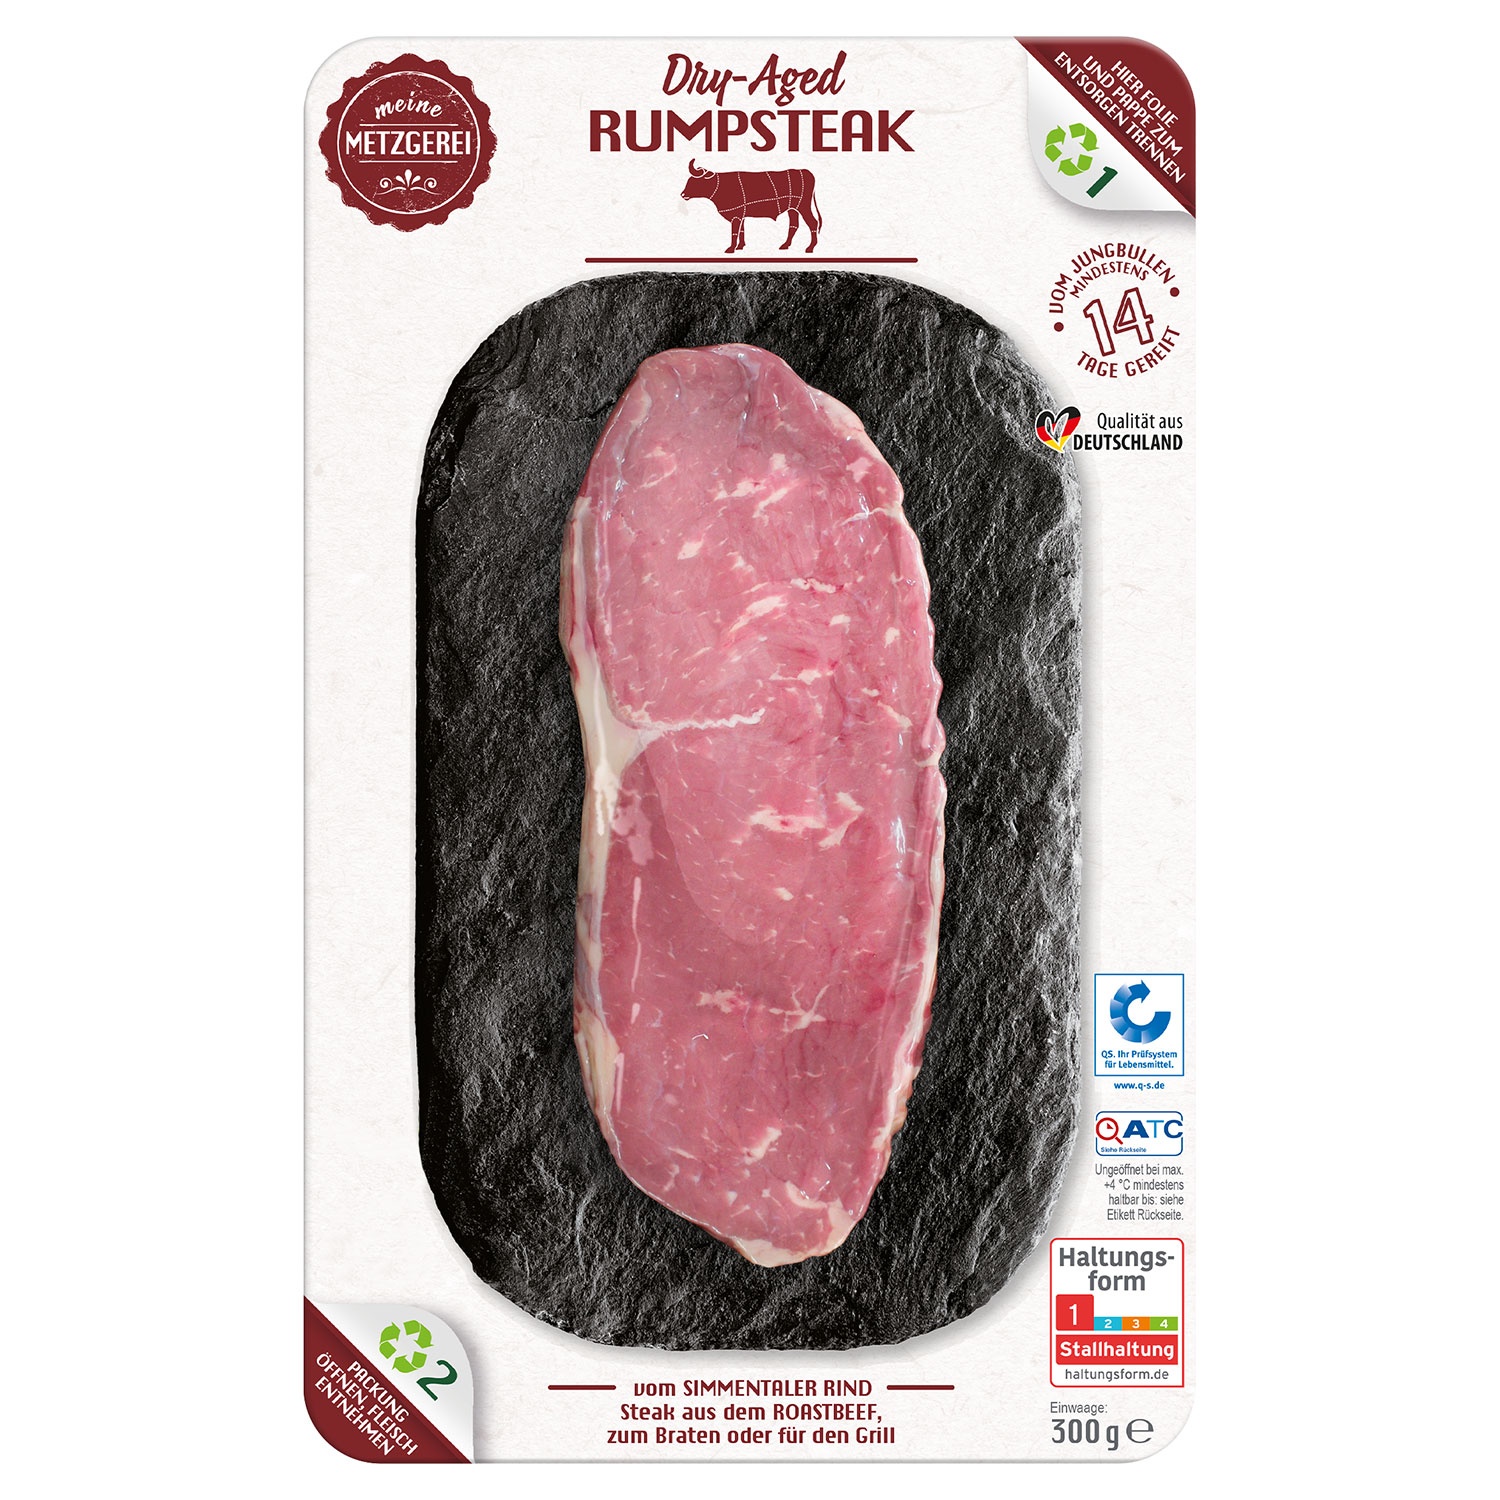 MEINE METZGEREI Dry-aged-Steak vom Simmentaler Rind 300 g